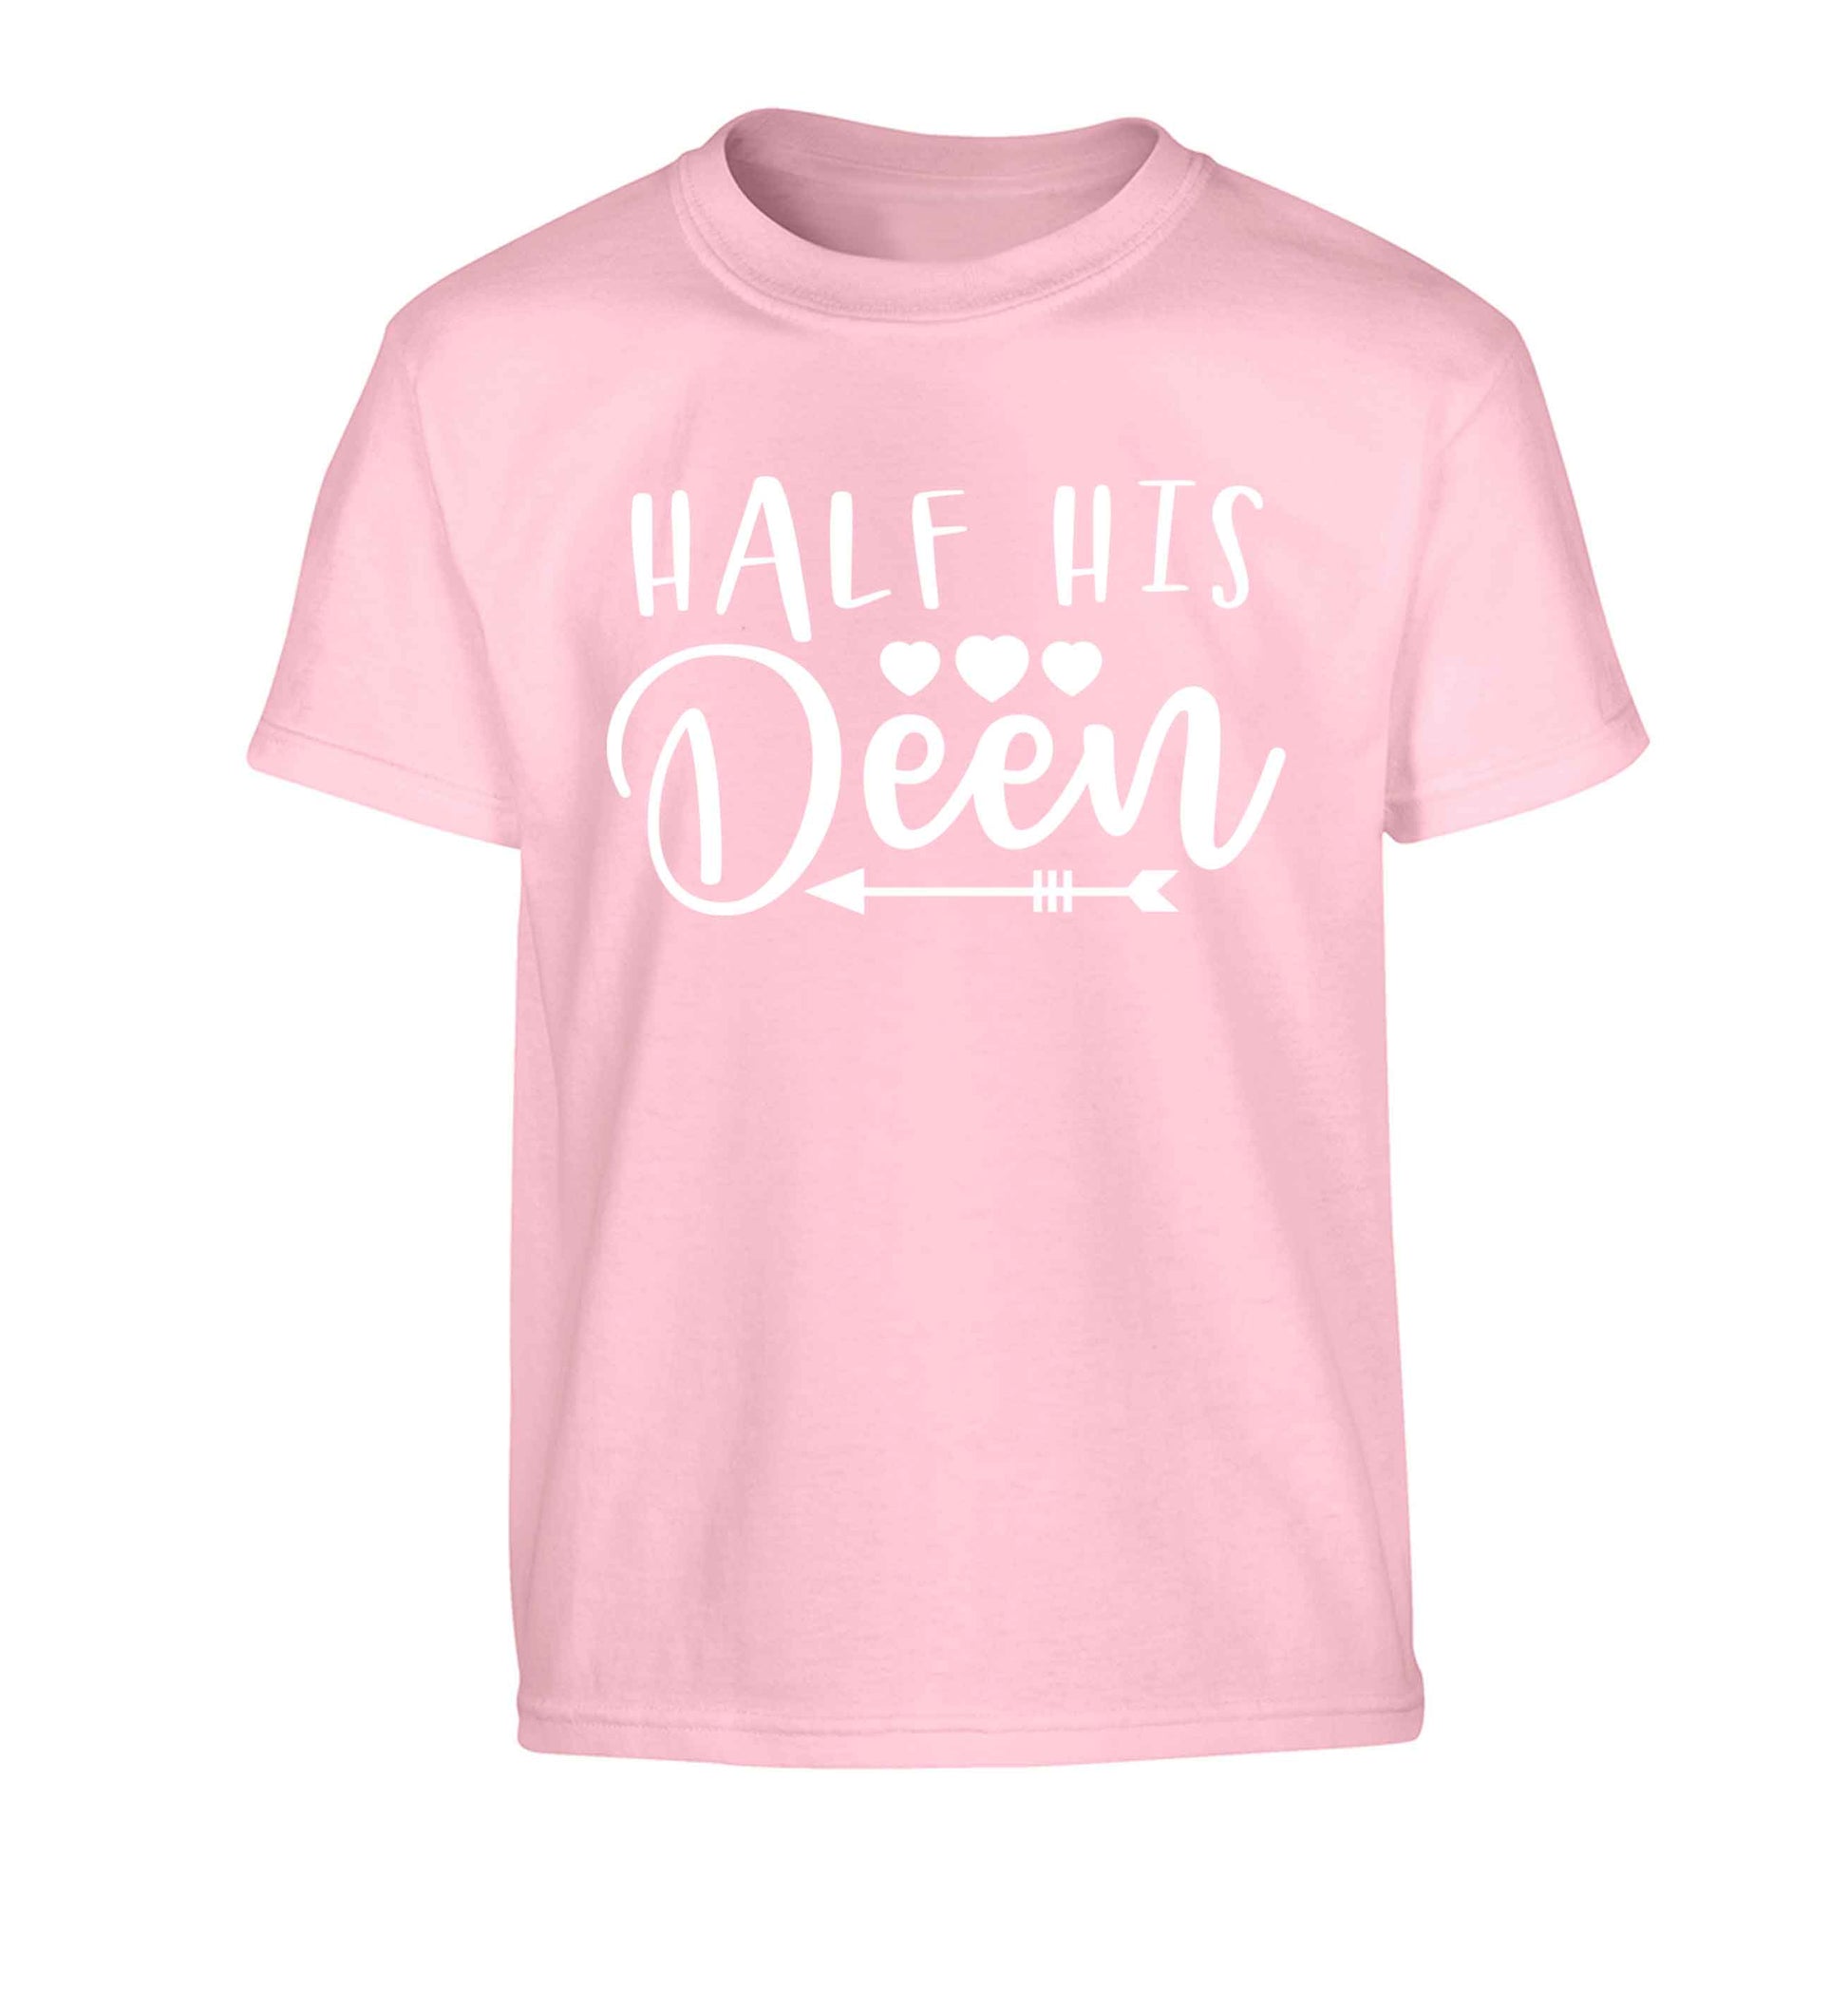 Half his deen Children's light pink Tshirt 12-13 Years